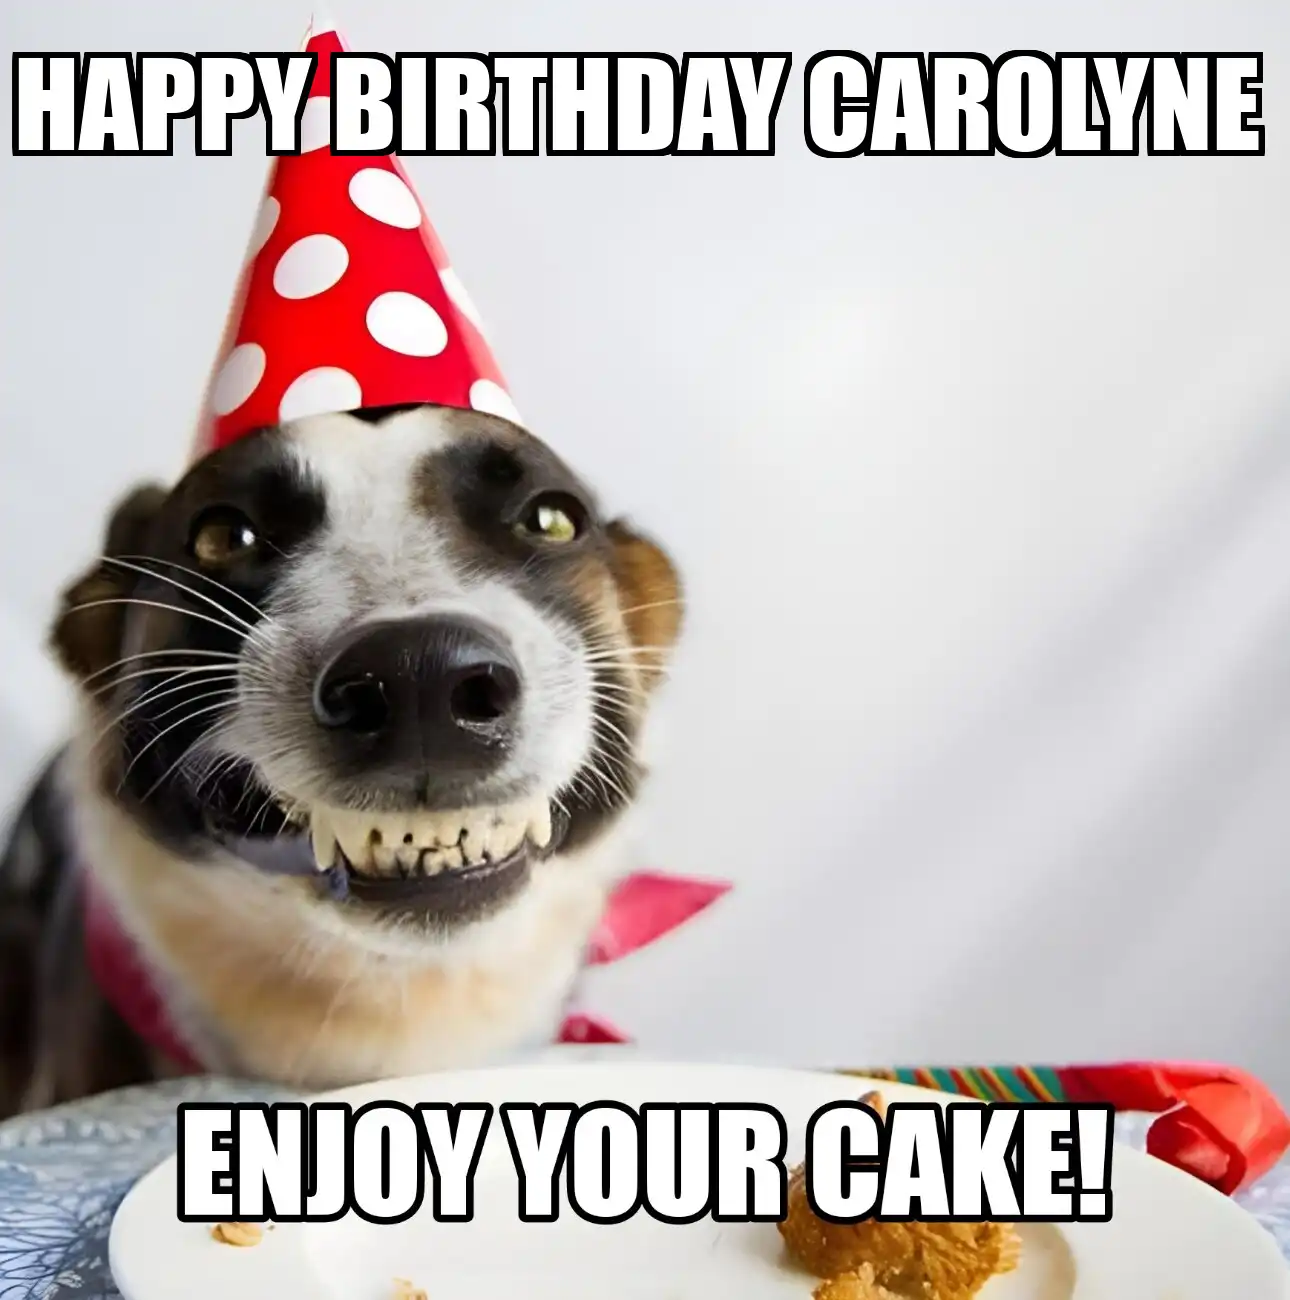 Happy Birthday Carolyne Enjoy Your Cake Dog Meme